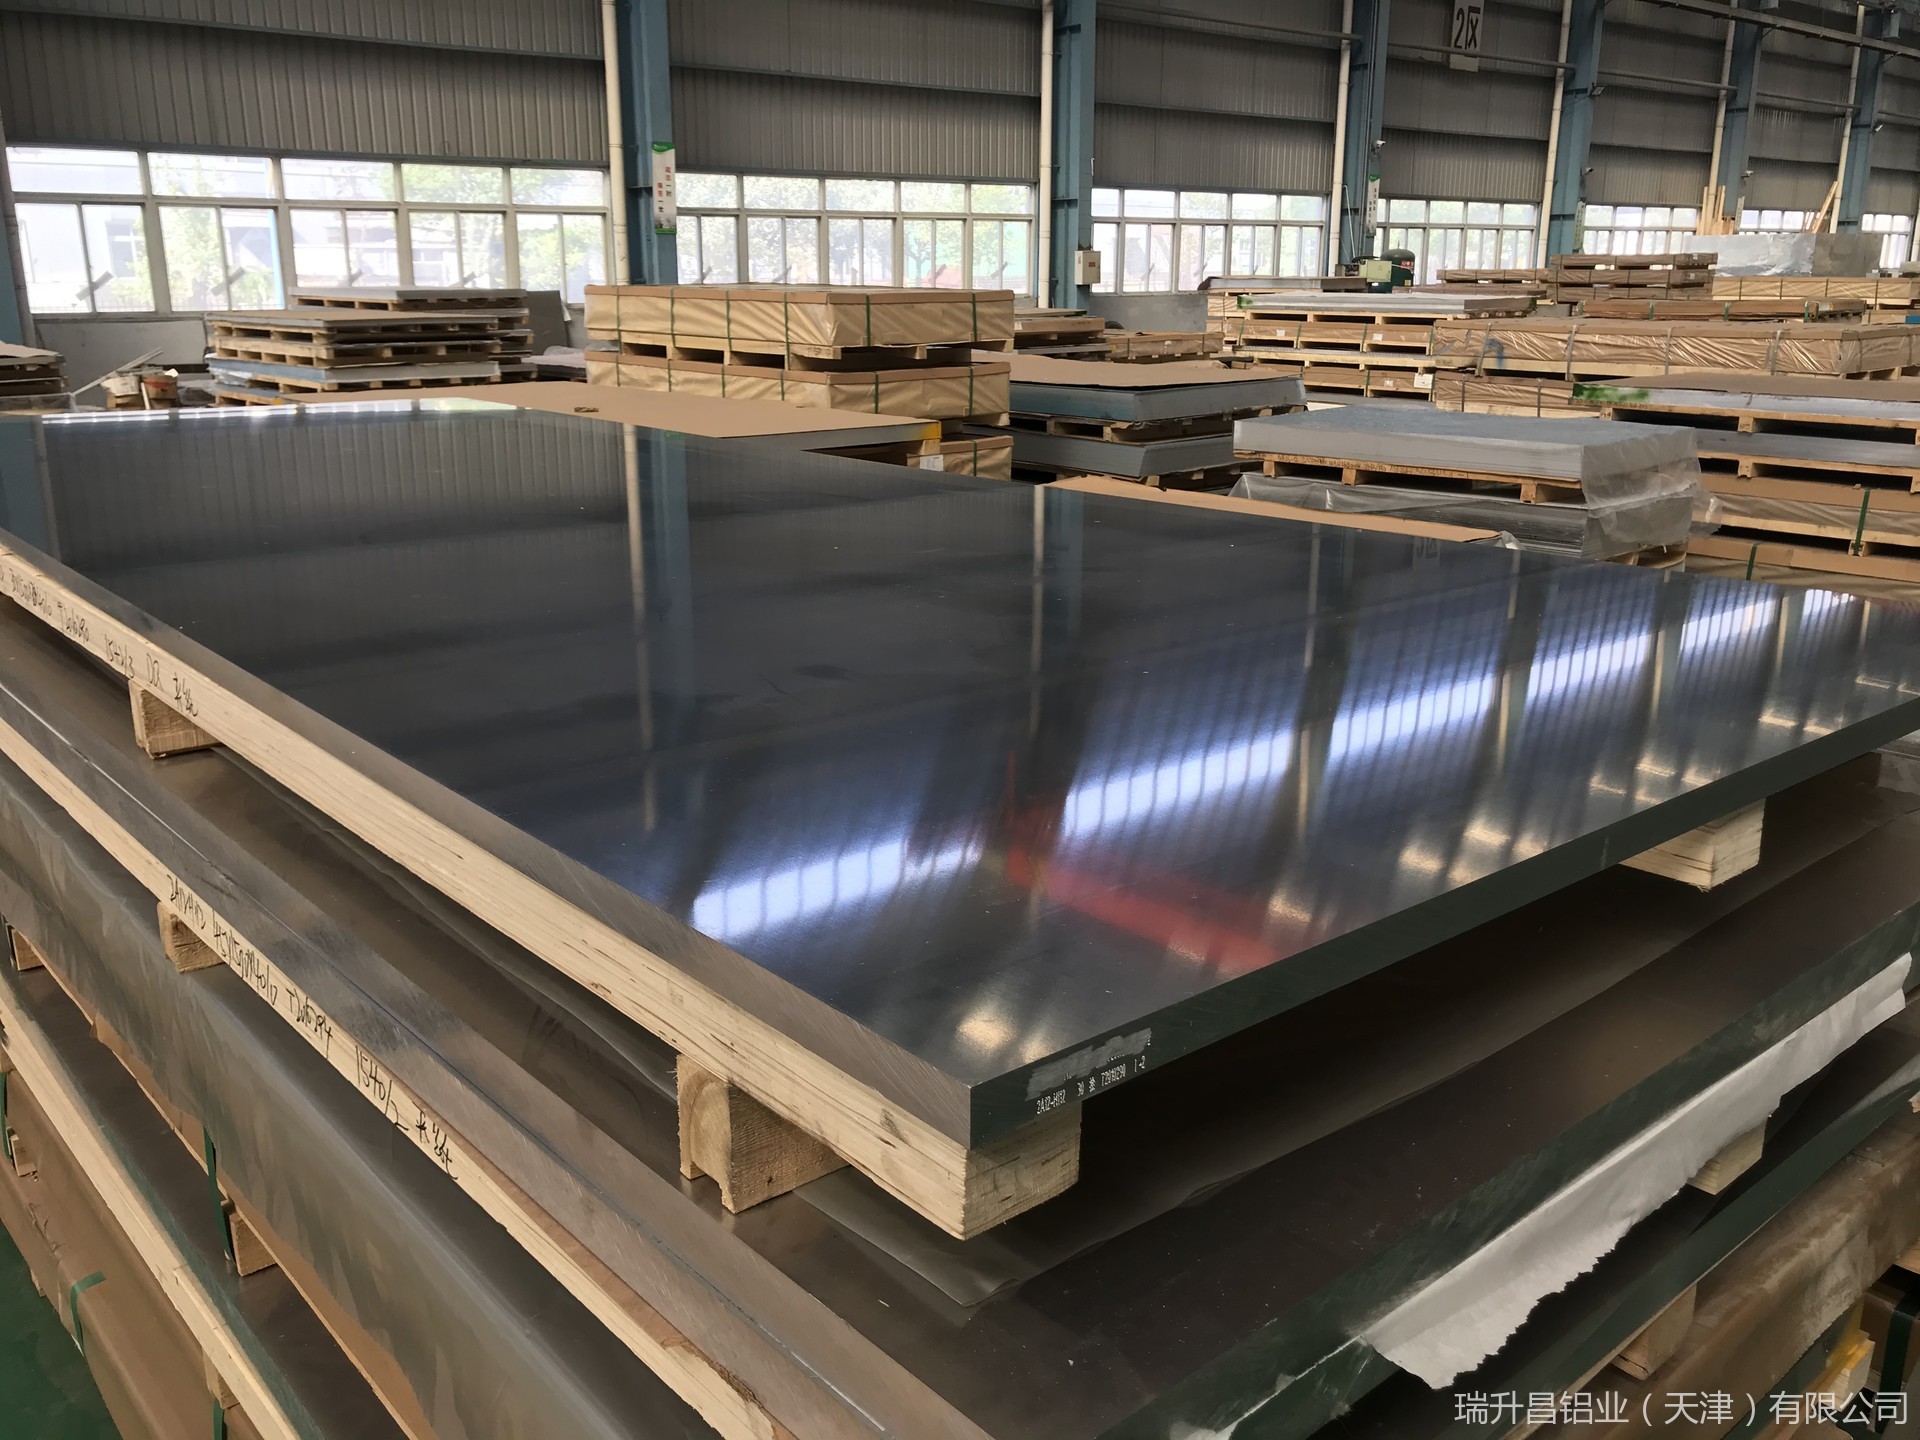 天津瑞升昌铝业供应2A12合金铝板 国标铝板2a12超硬铝价格 2a12h112铝板  LY12供应商厂家 成批出售可切割示例图11